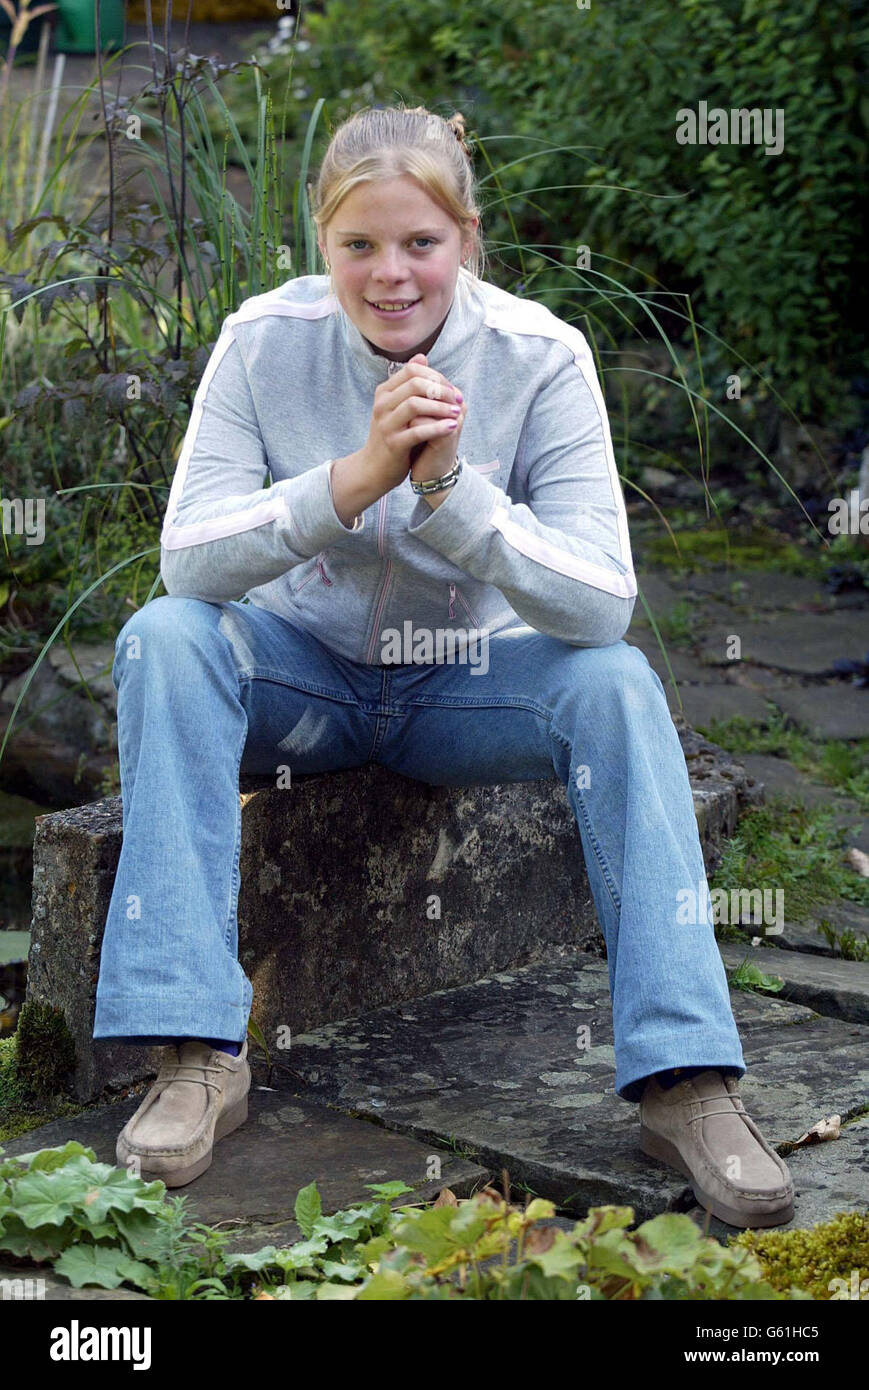 Neues Bild ausgestellt am Samstag, 21. September 2002 von Gemma Dowler - Schwester von Milly - in Walton an der Themse. Millys Überreste wurden sechs Monate, nachdem sie aus Walton auf der Themse verschwunden war, im Wald gefunden. Stockfoto